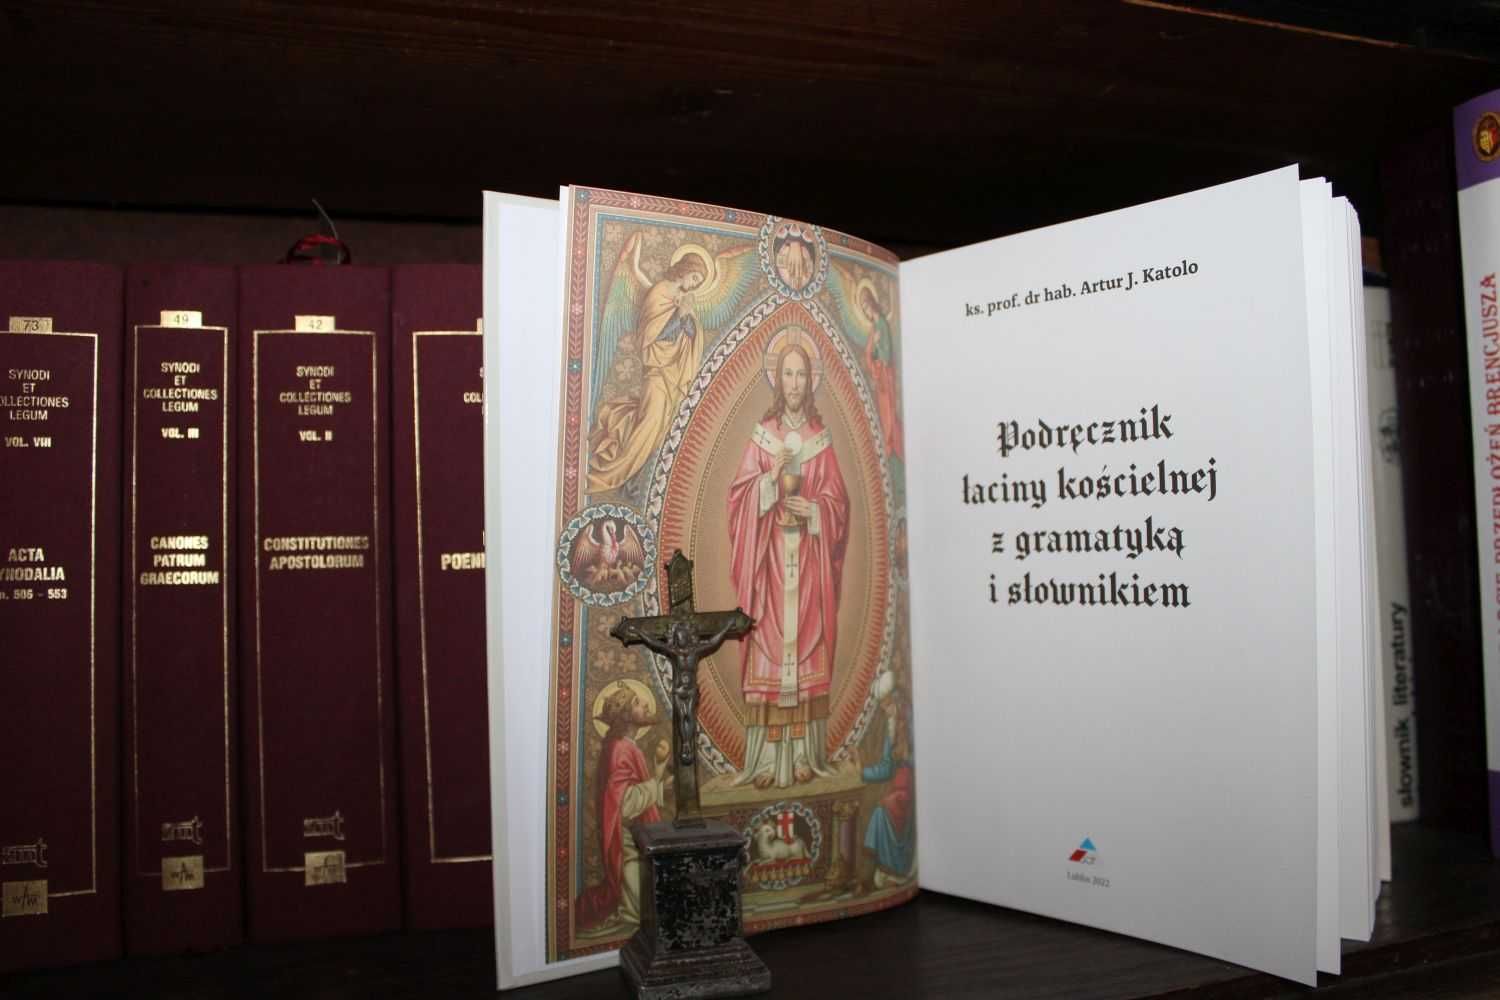 Podręcznik łaciny kościelnej z gramatyką i słownikiem.